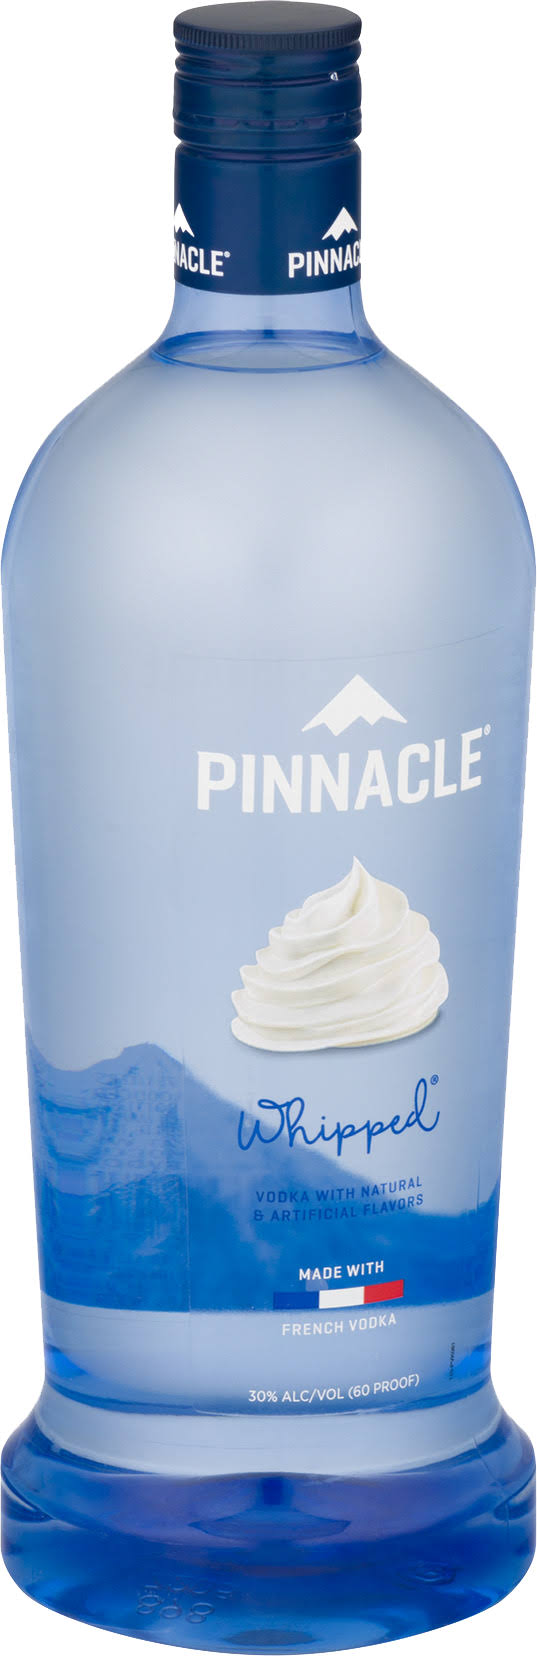 Pinnacle Vodka - Whipped Cream, 1.75l